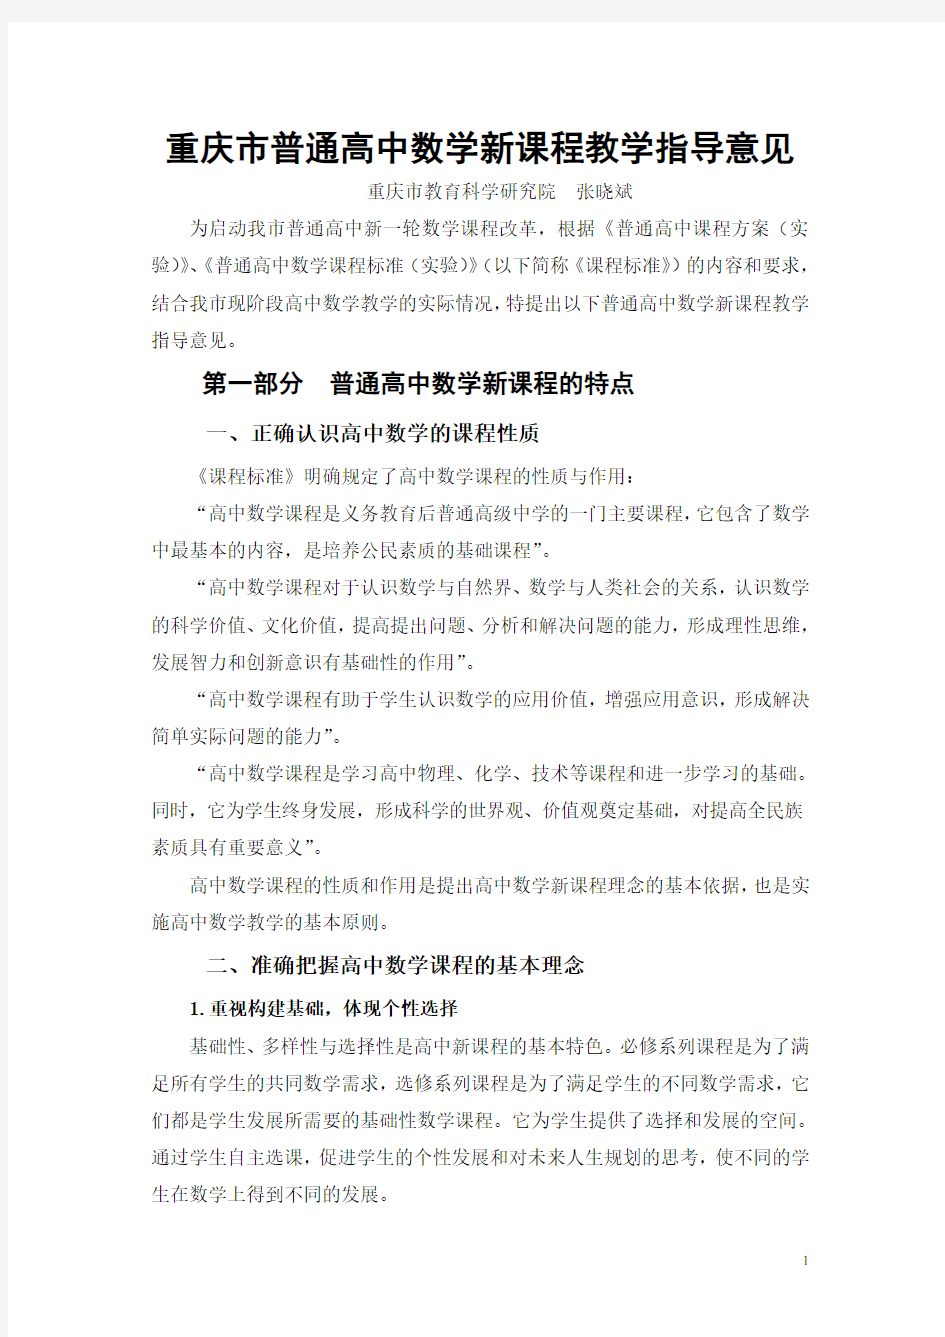 重庆市普通高中数学新课程教学指导意见